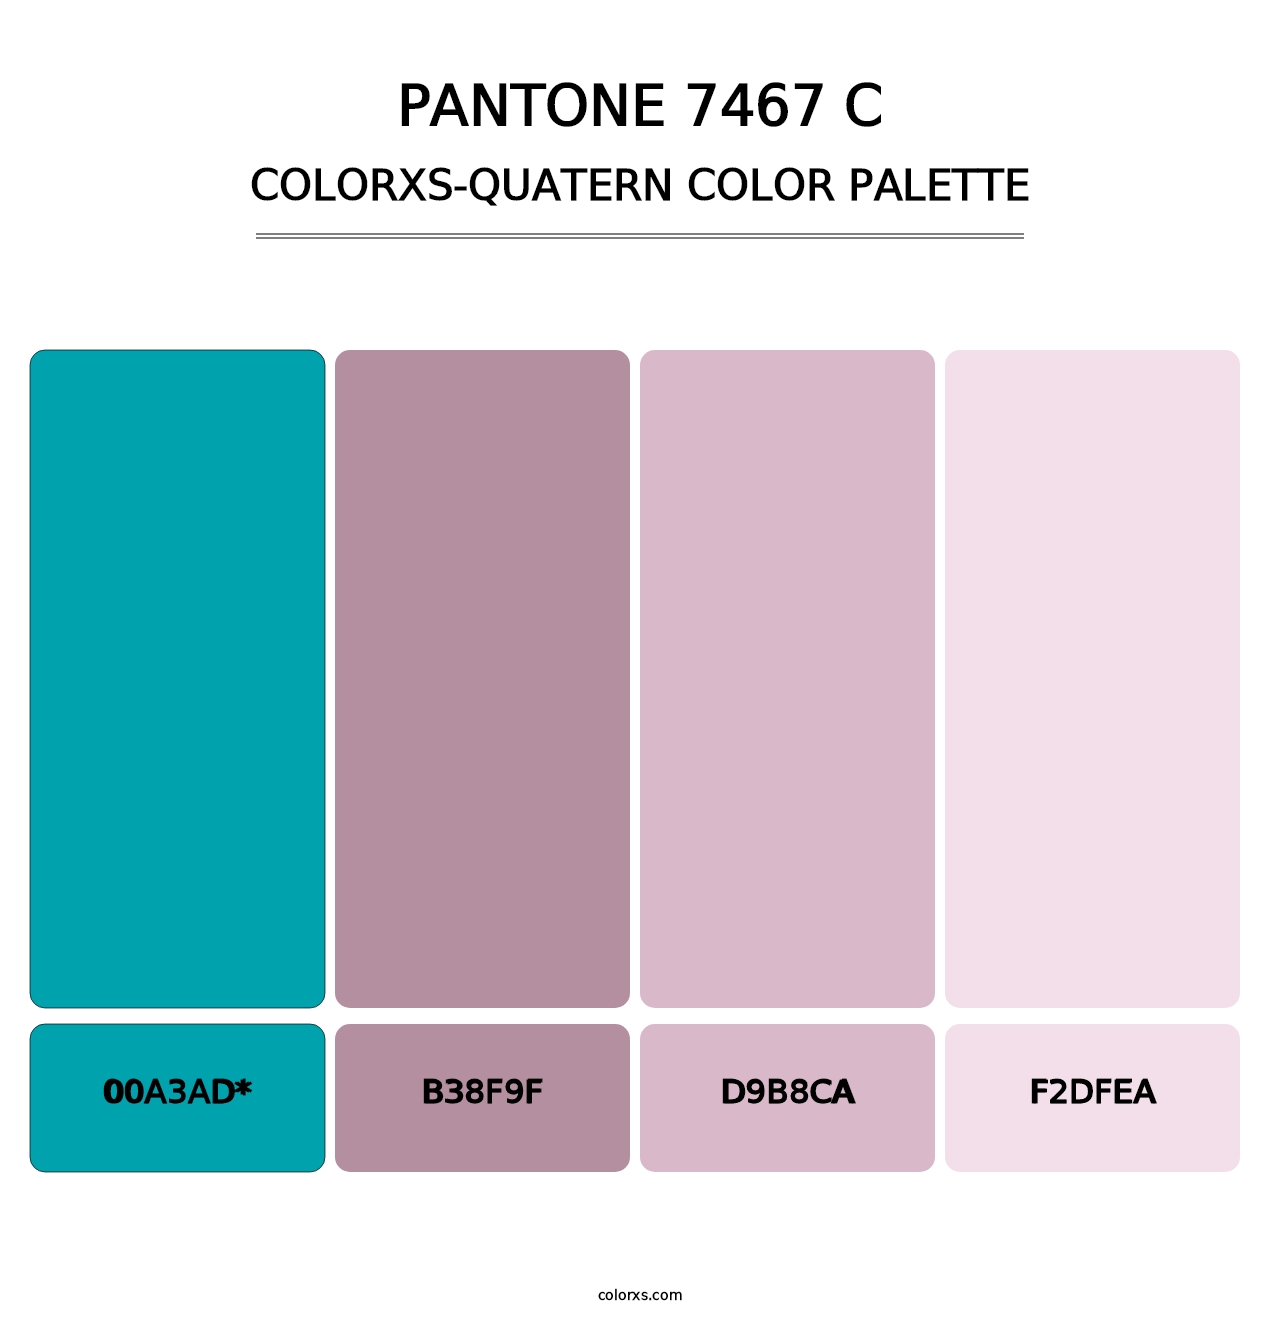 PANTONE 7467 C - Colorxs Quatern Palette